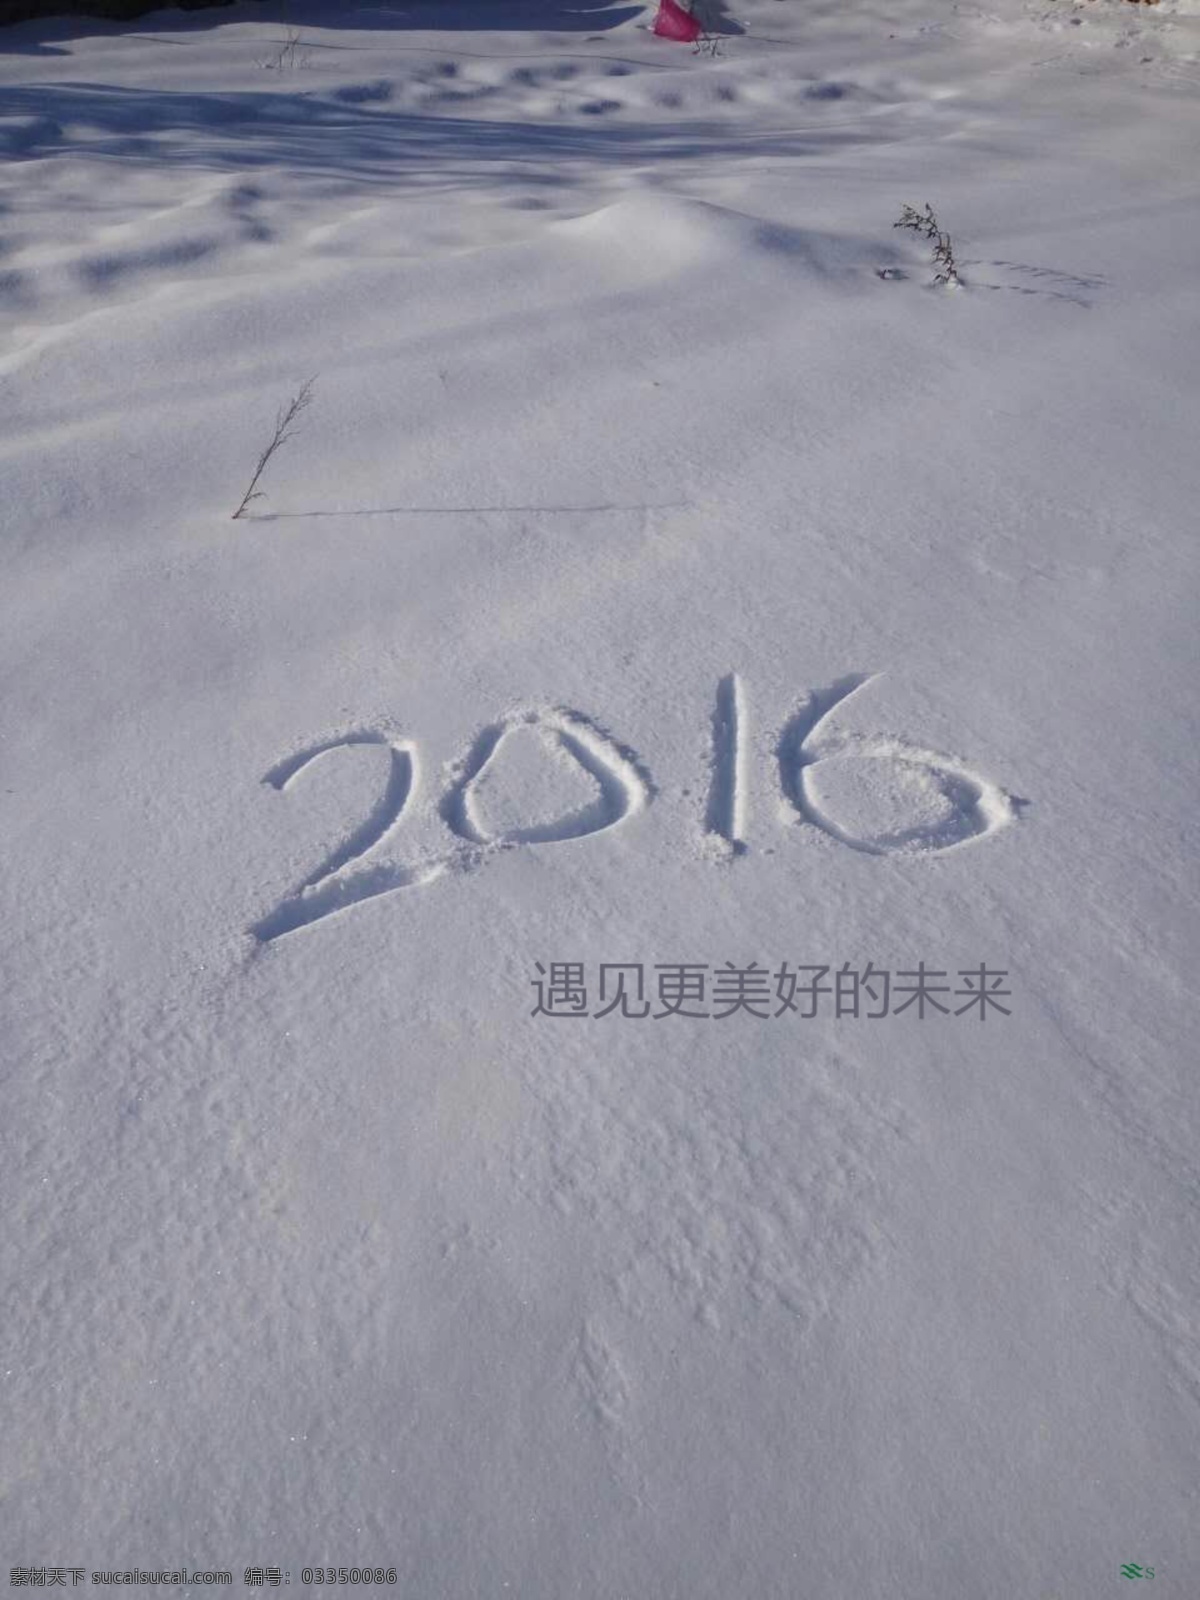 遇见 更好 未来 2016 雪地 美好 新年 灰色